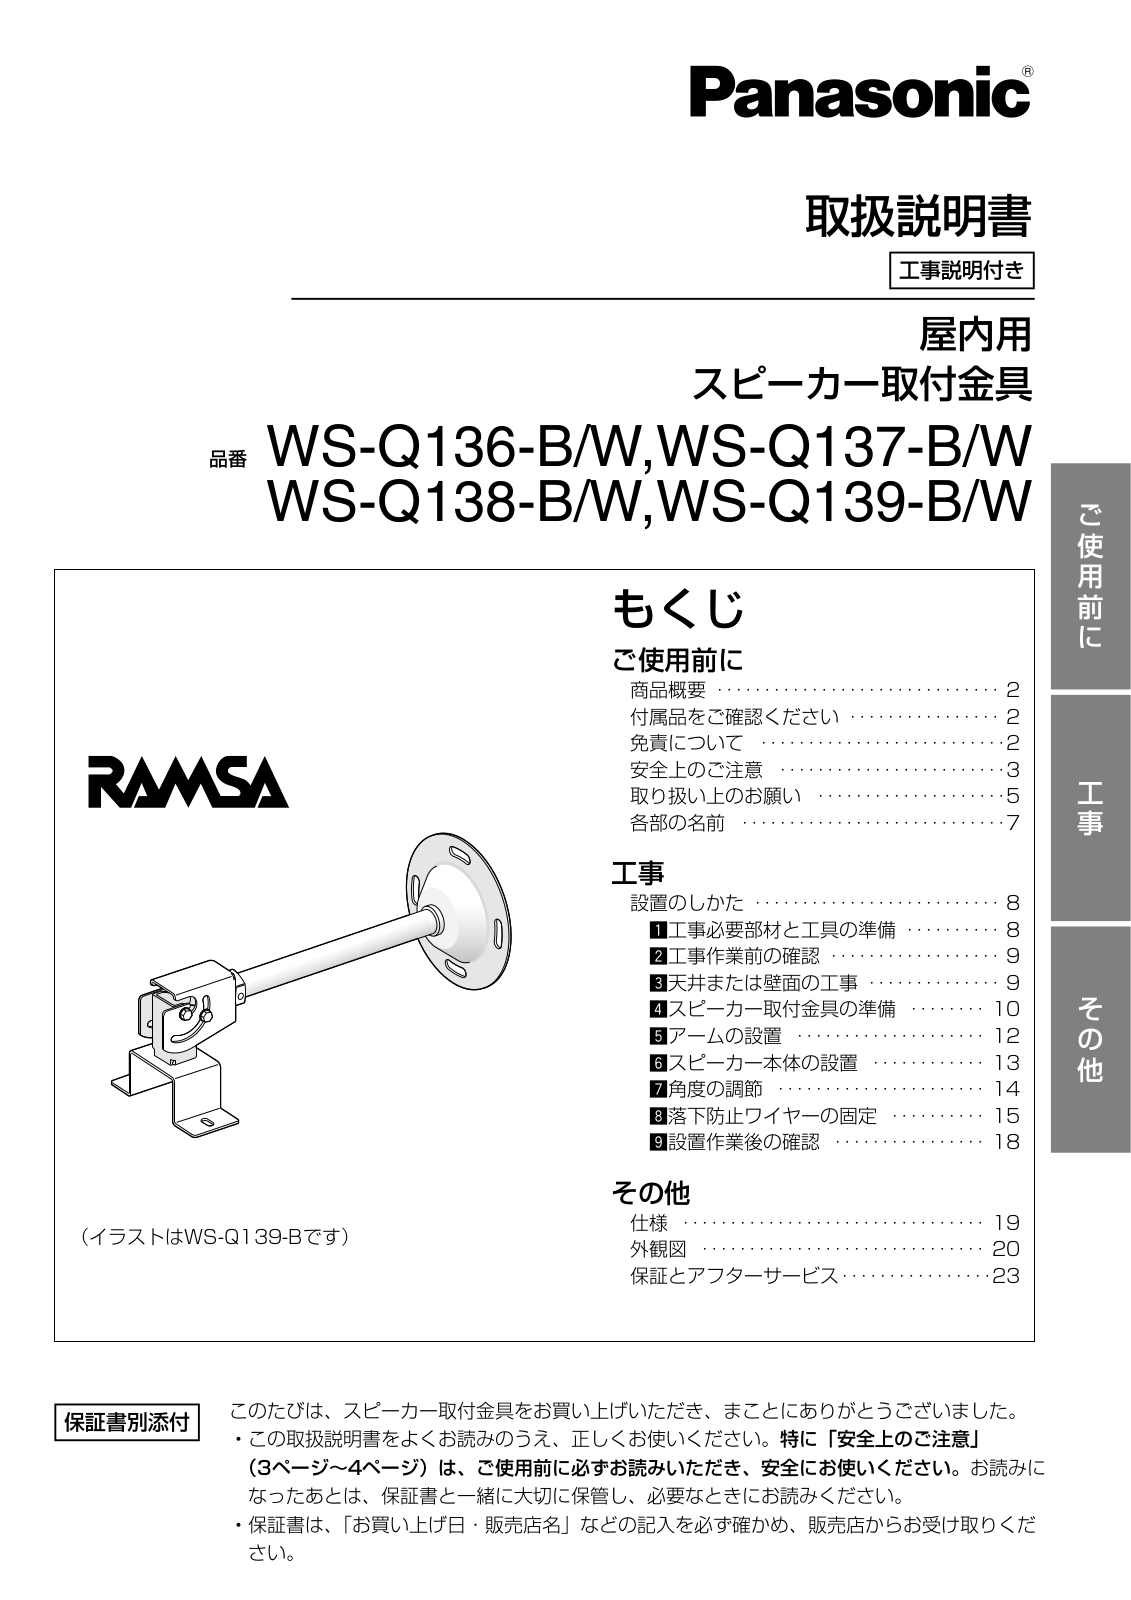 Panasonic WS-Q136-BW, WS-Q137-BW, WS-Q138-BW, WS-Q139-BW User Manual